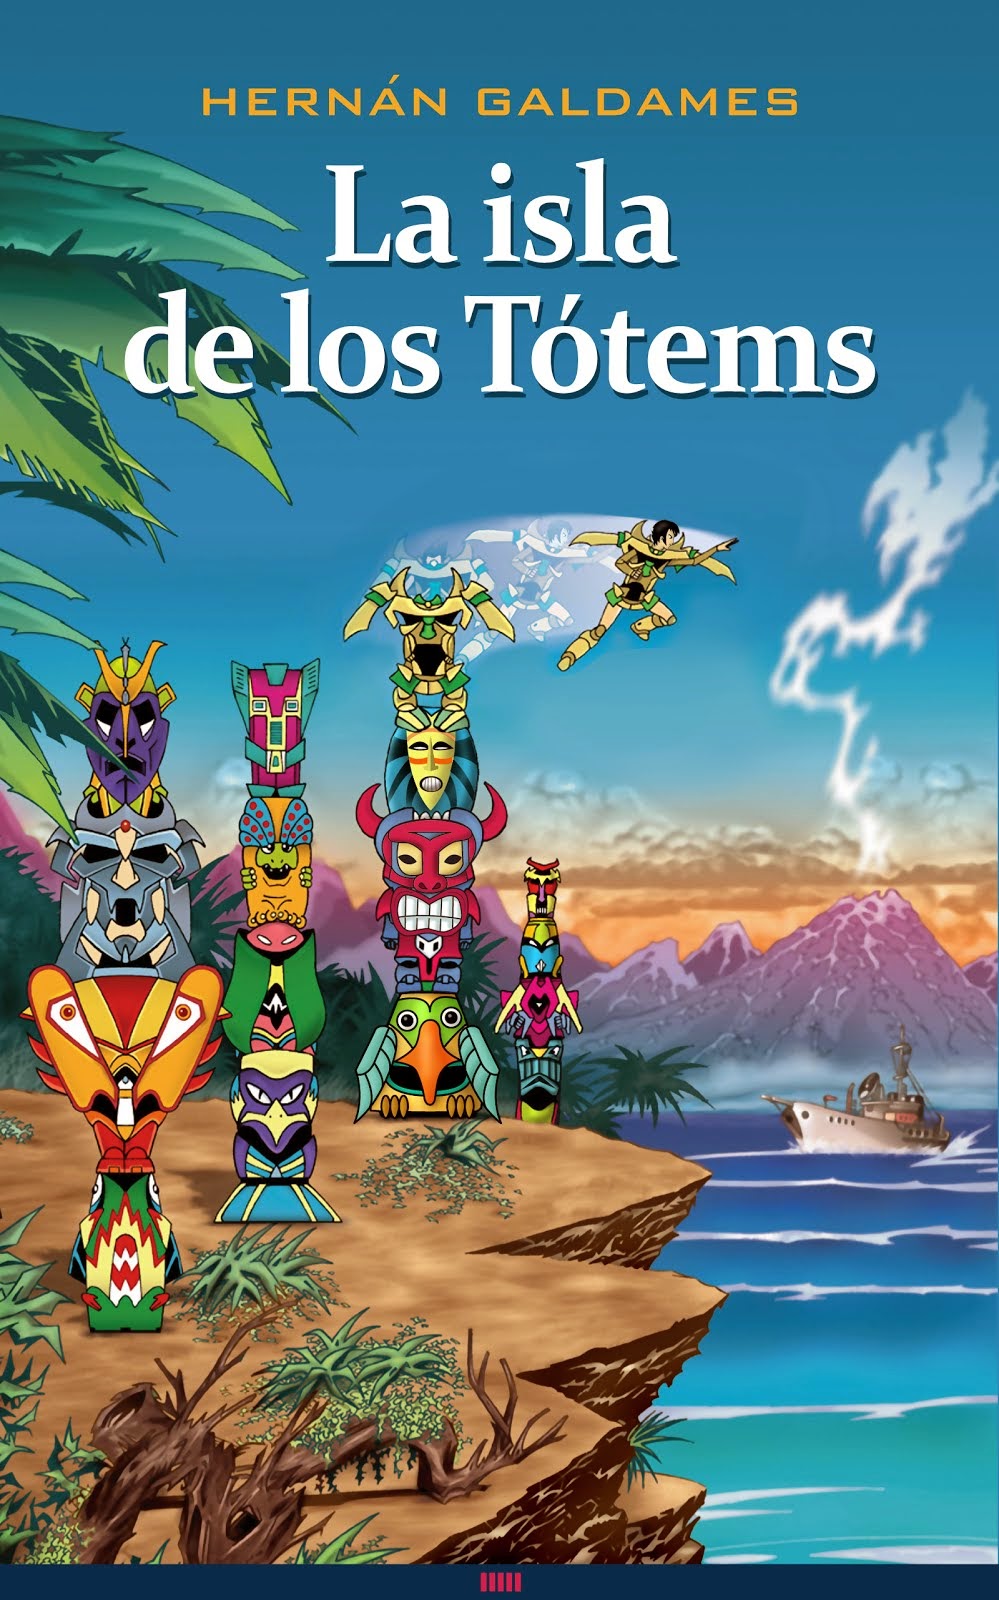 Primer libro de la trilogía de los Tótems. DISPONIBLE EN AMAZON. ¡AHORA TAMBIÉN EN TAPA BLANDA!